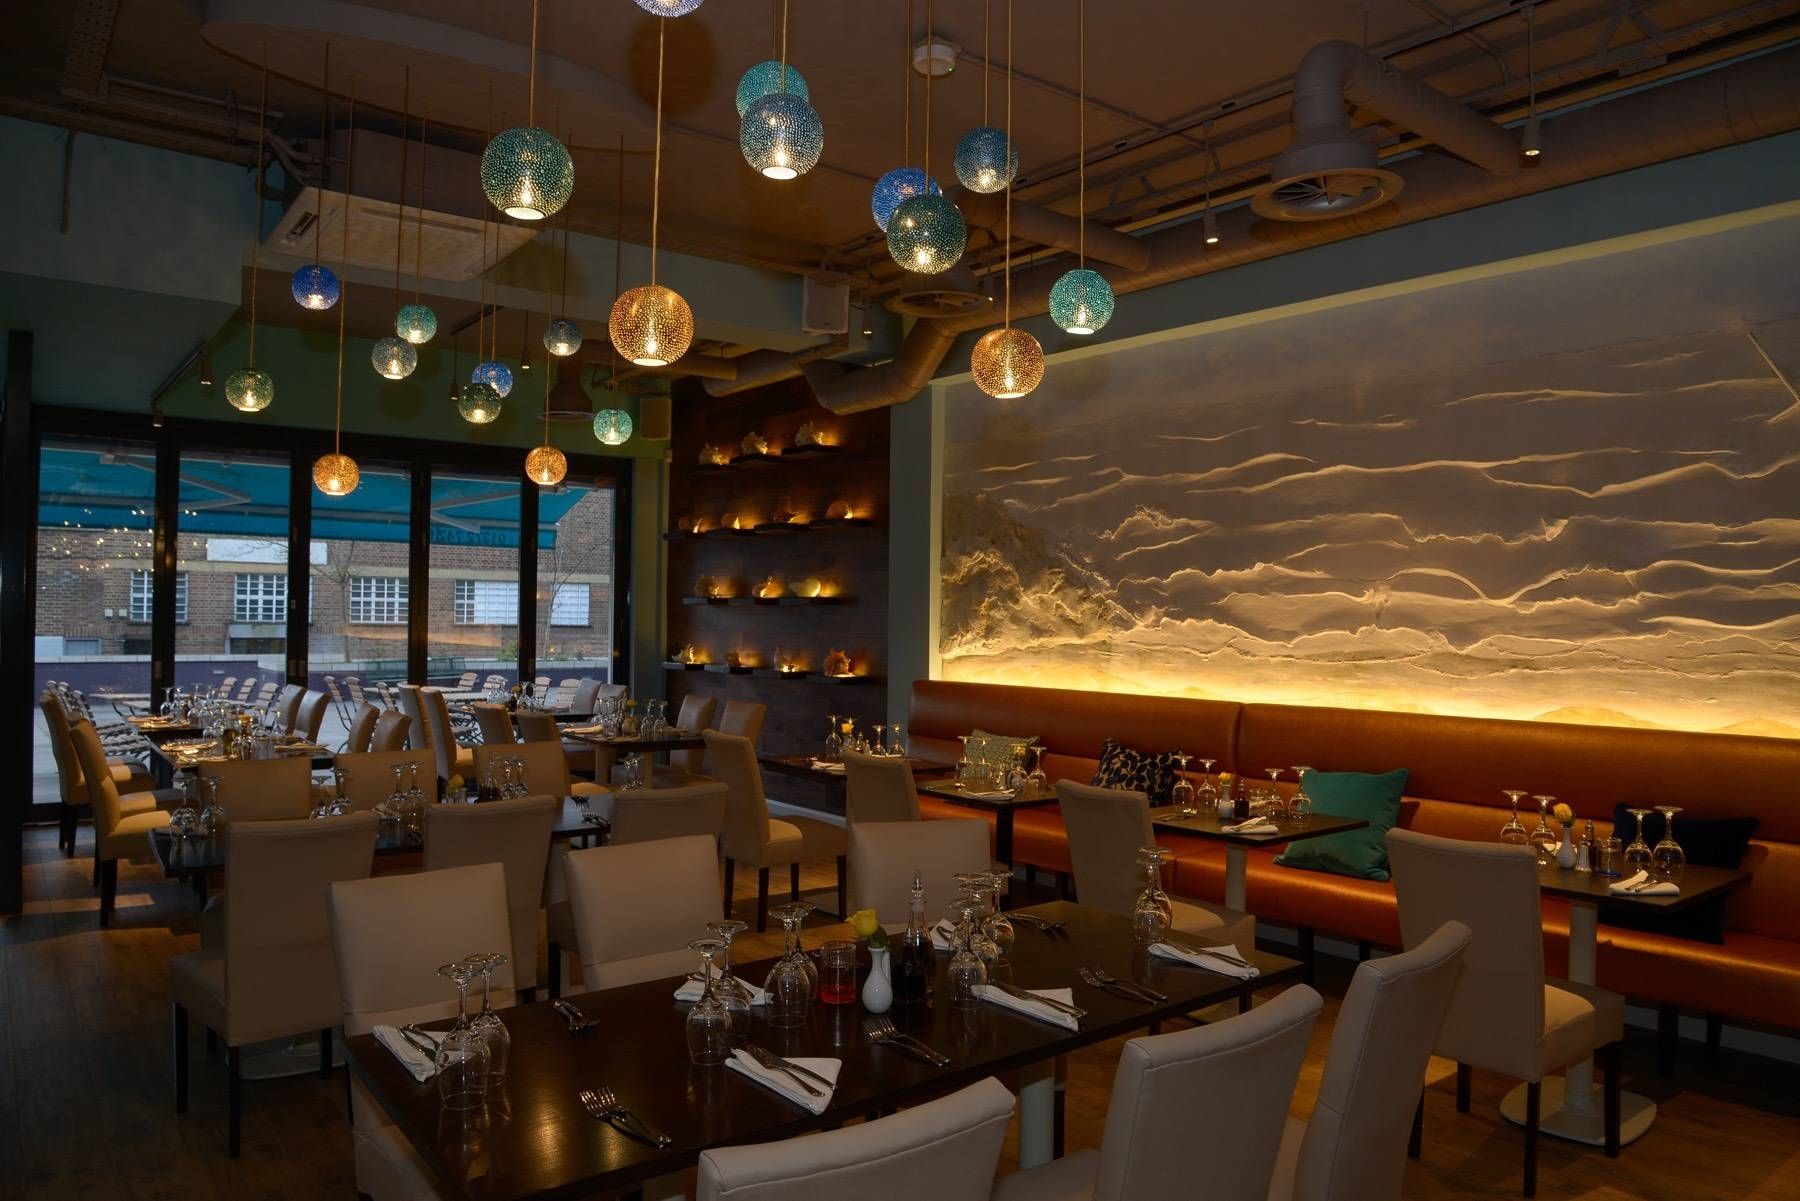 Rita & Gina Pendant Lights In New Epsom Restaurant | Pertaining To Restaurant Pendant Lights (View 9 of 15)